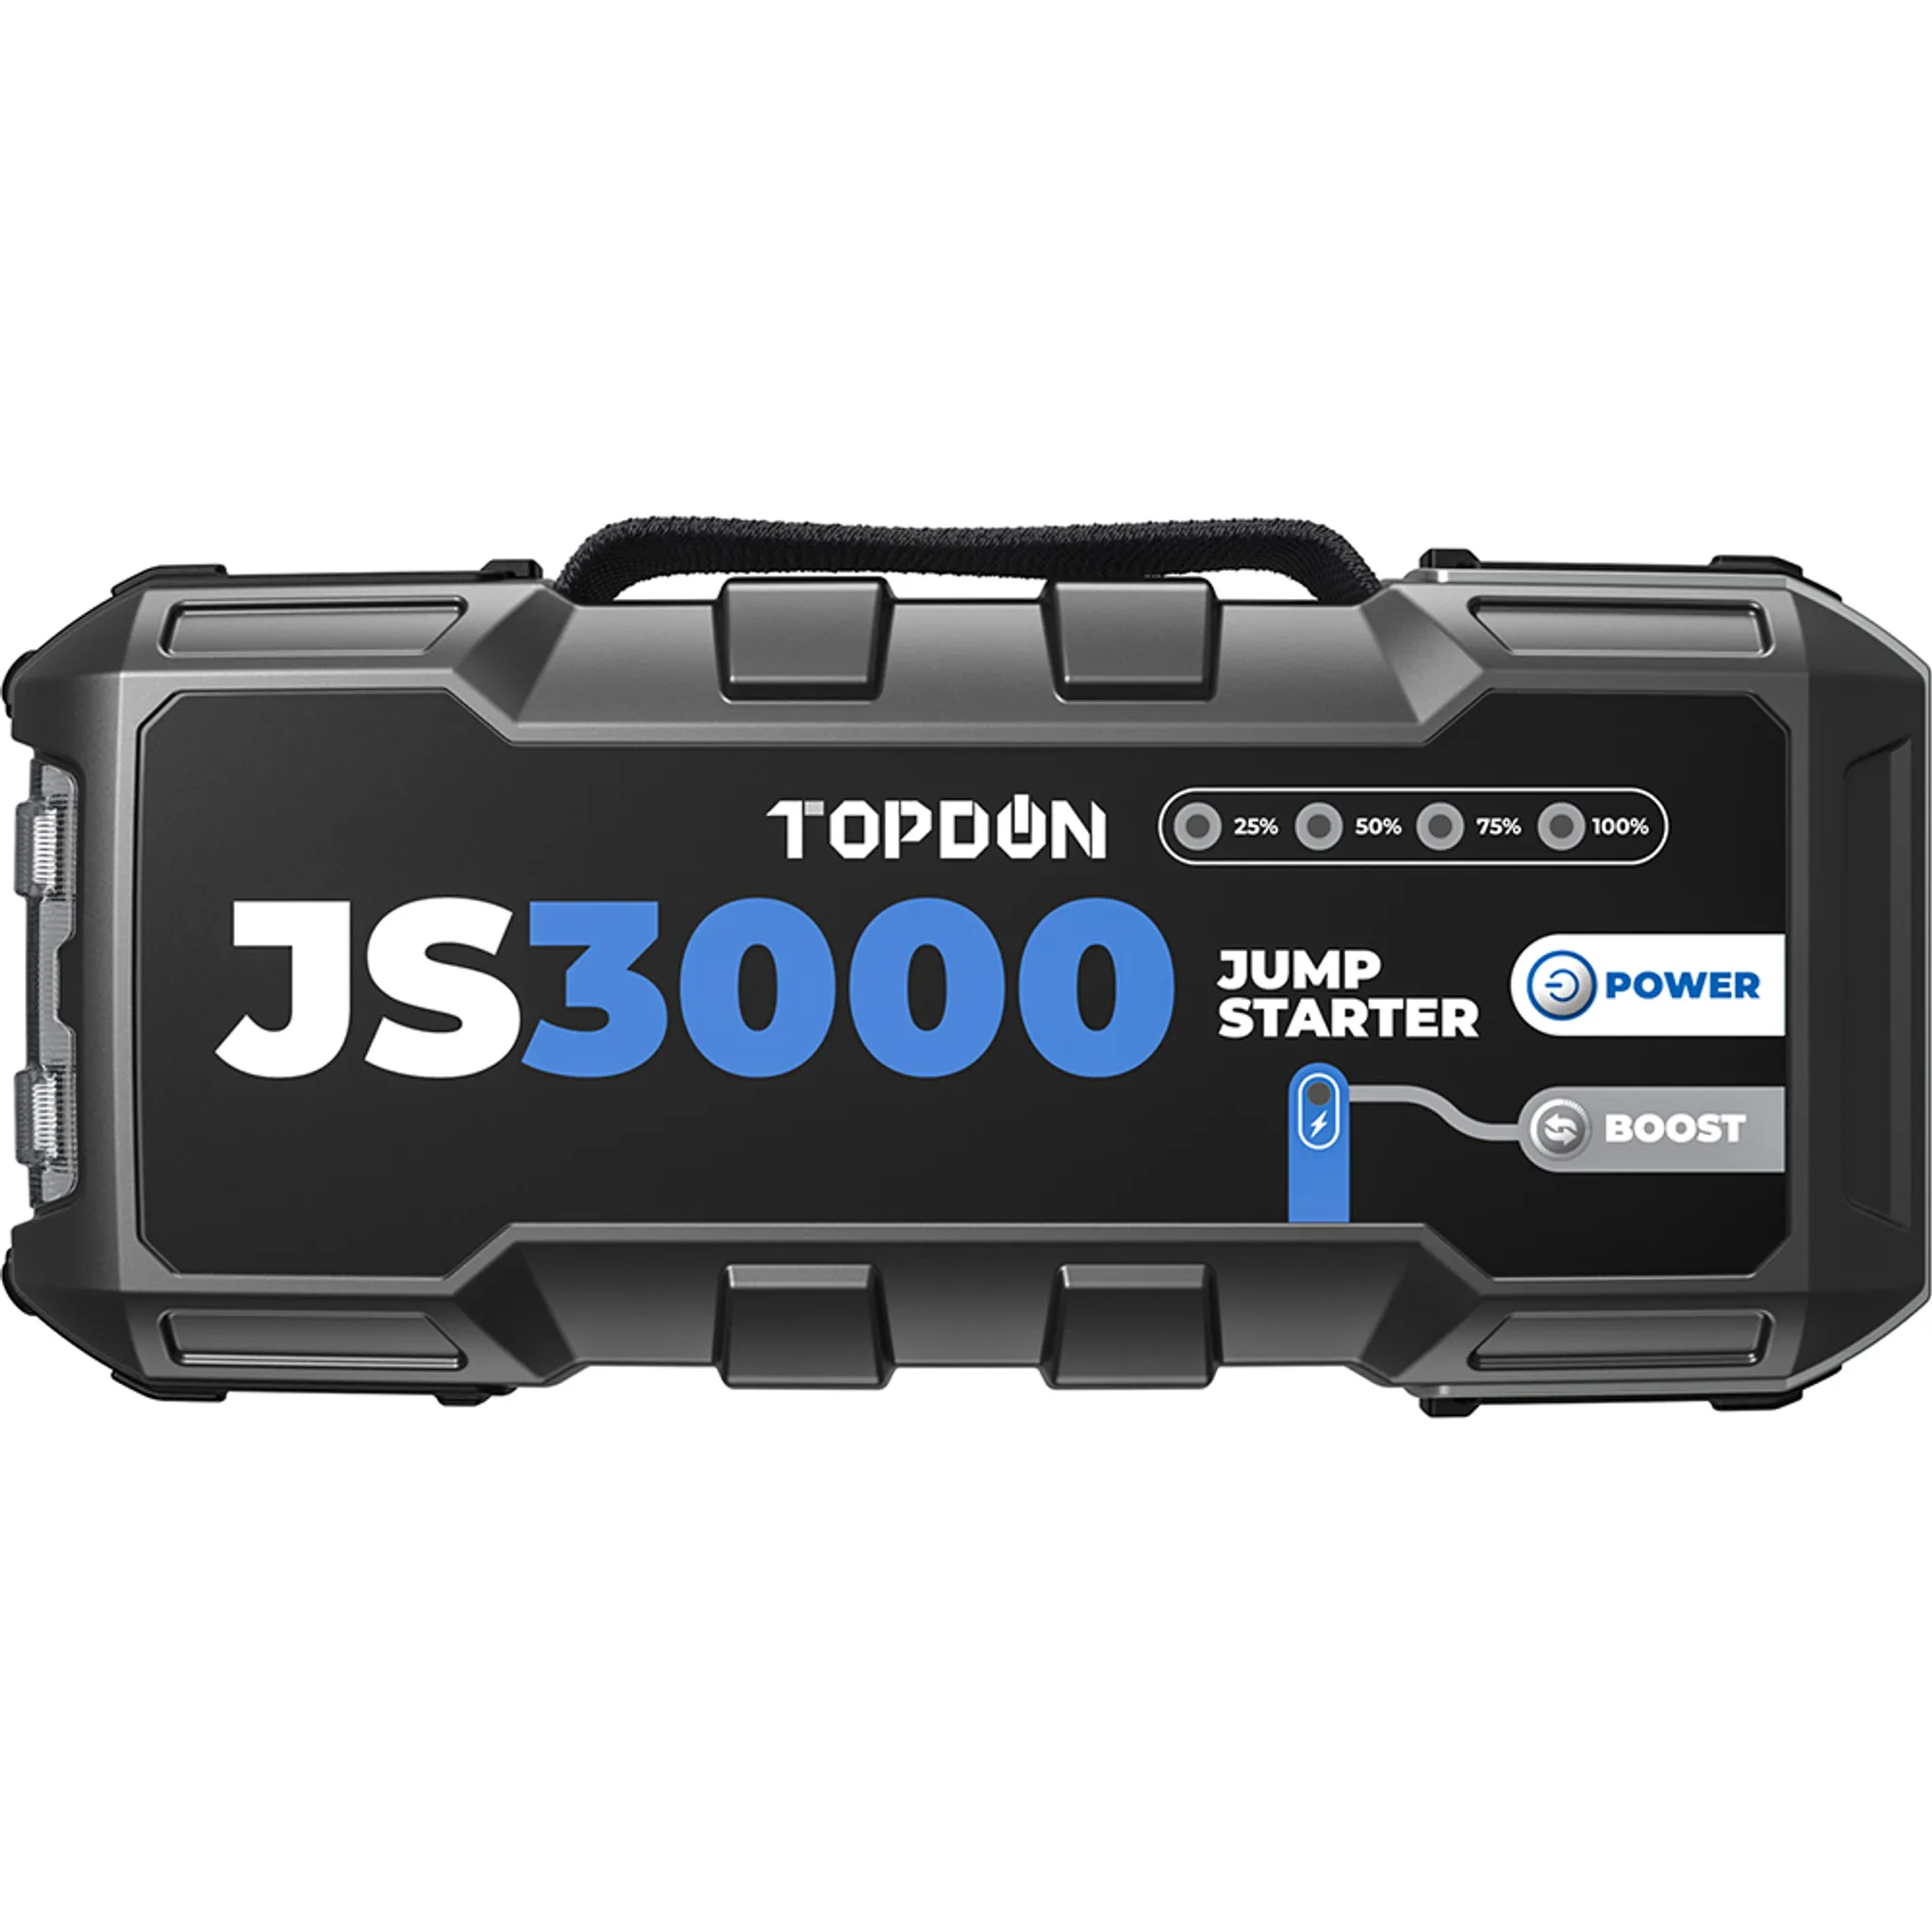 TOPDON Starthilfe Powerbank, JS3000 Starterbatterie 2000A Auto Booster  Power Pack für bis zu 9L Benzin&7L Dieselmotoren, Kfz Jump Starter mit